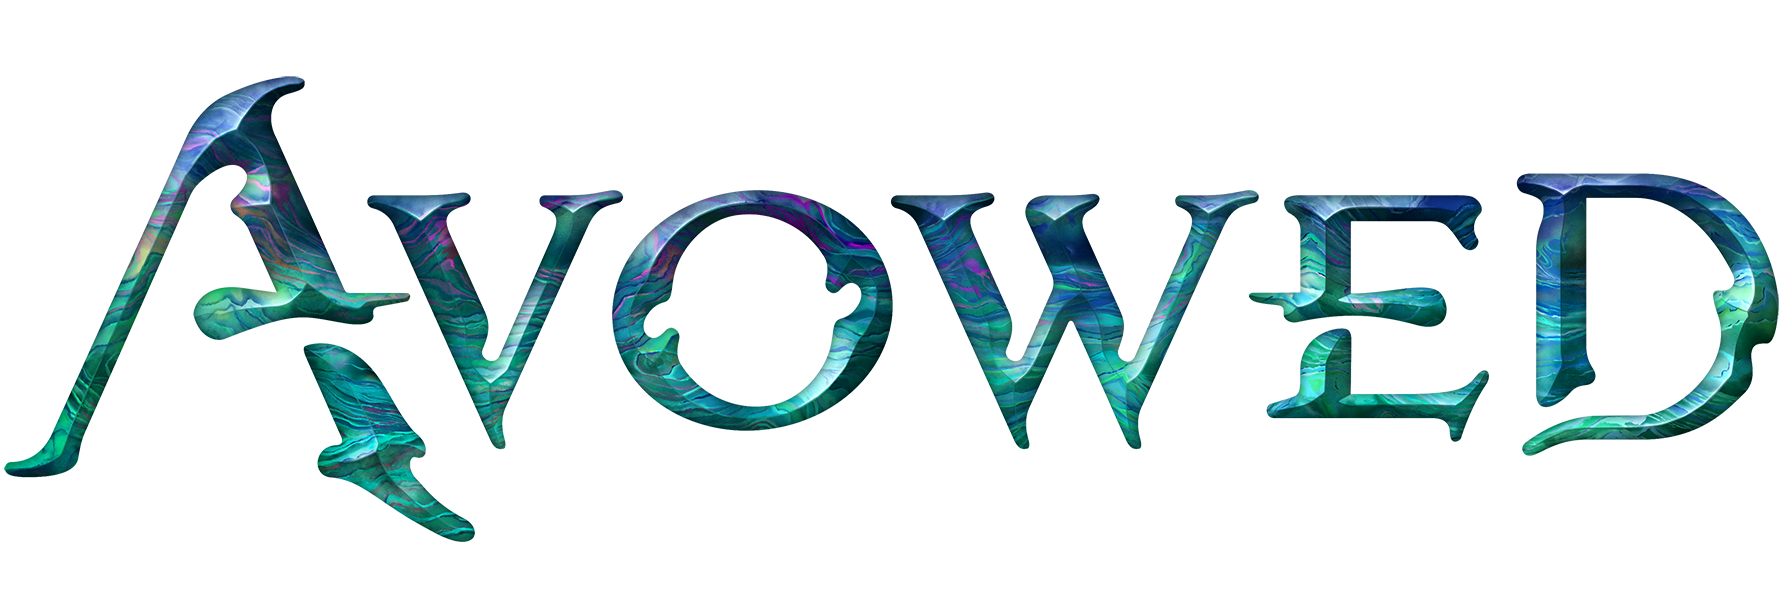 Avowed-logo.png